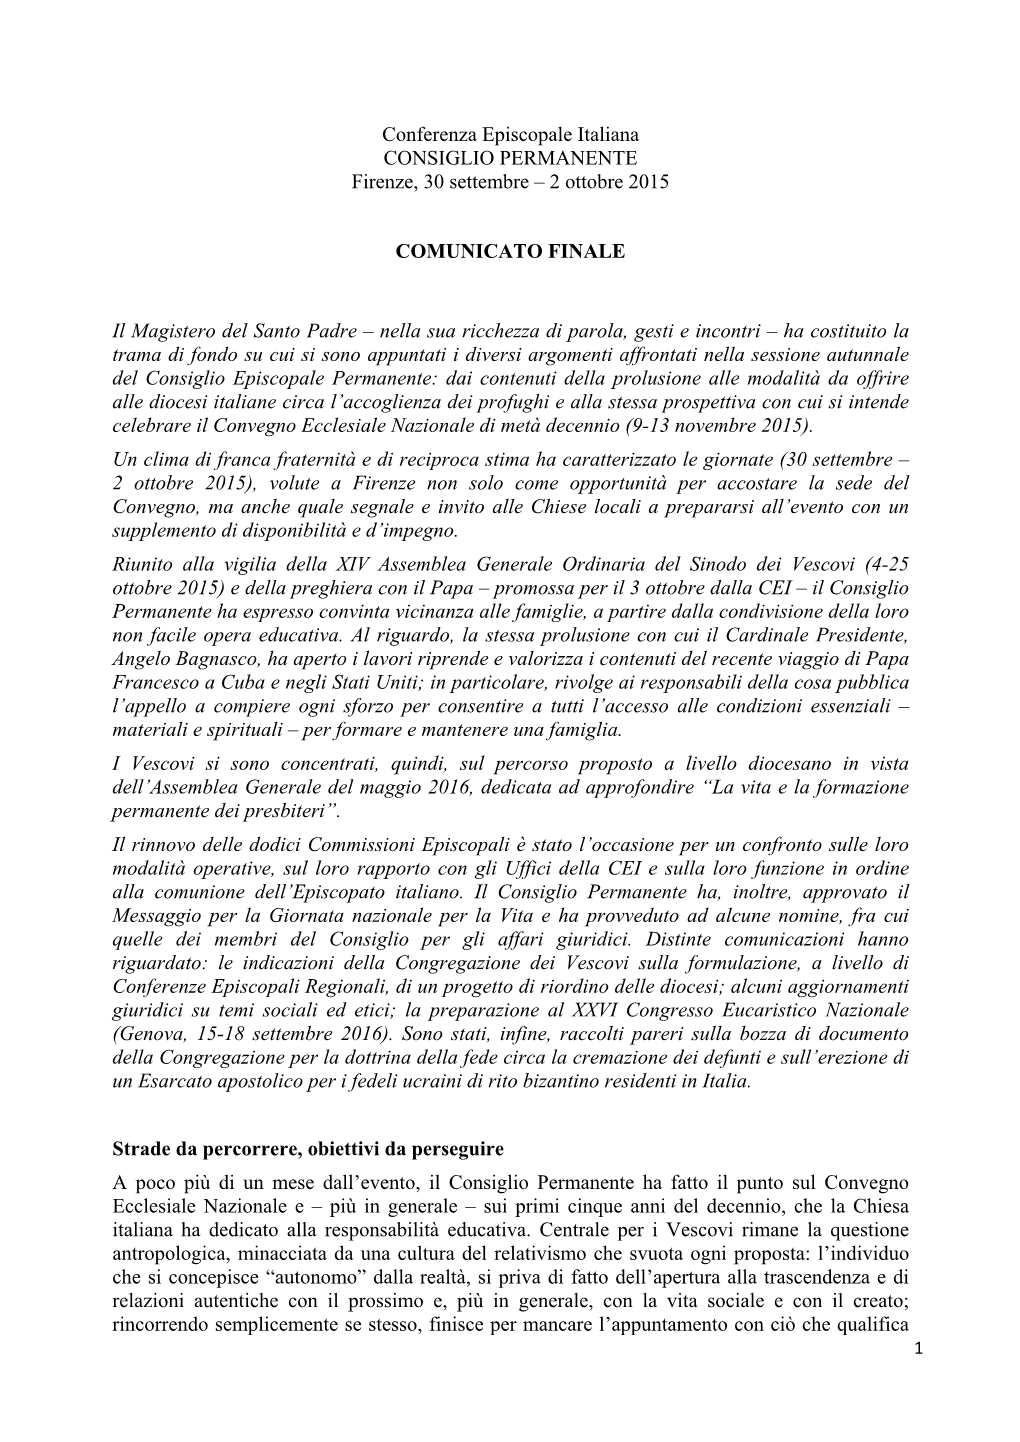 Conferenza Episcopale Italiana CONSIGLIO PERMANENTE Firenze, 30 Settembre – 2 Ottobre 2015